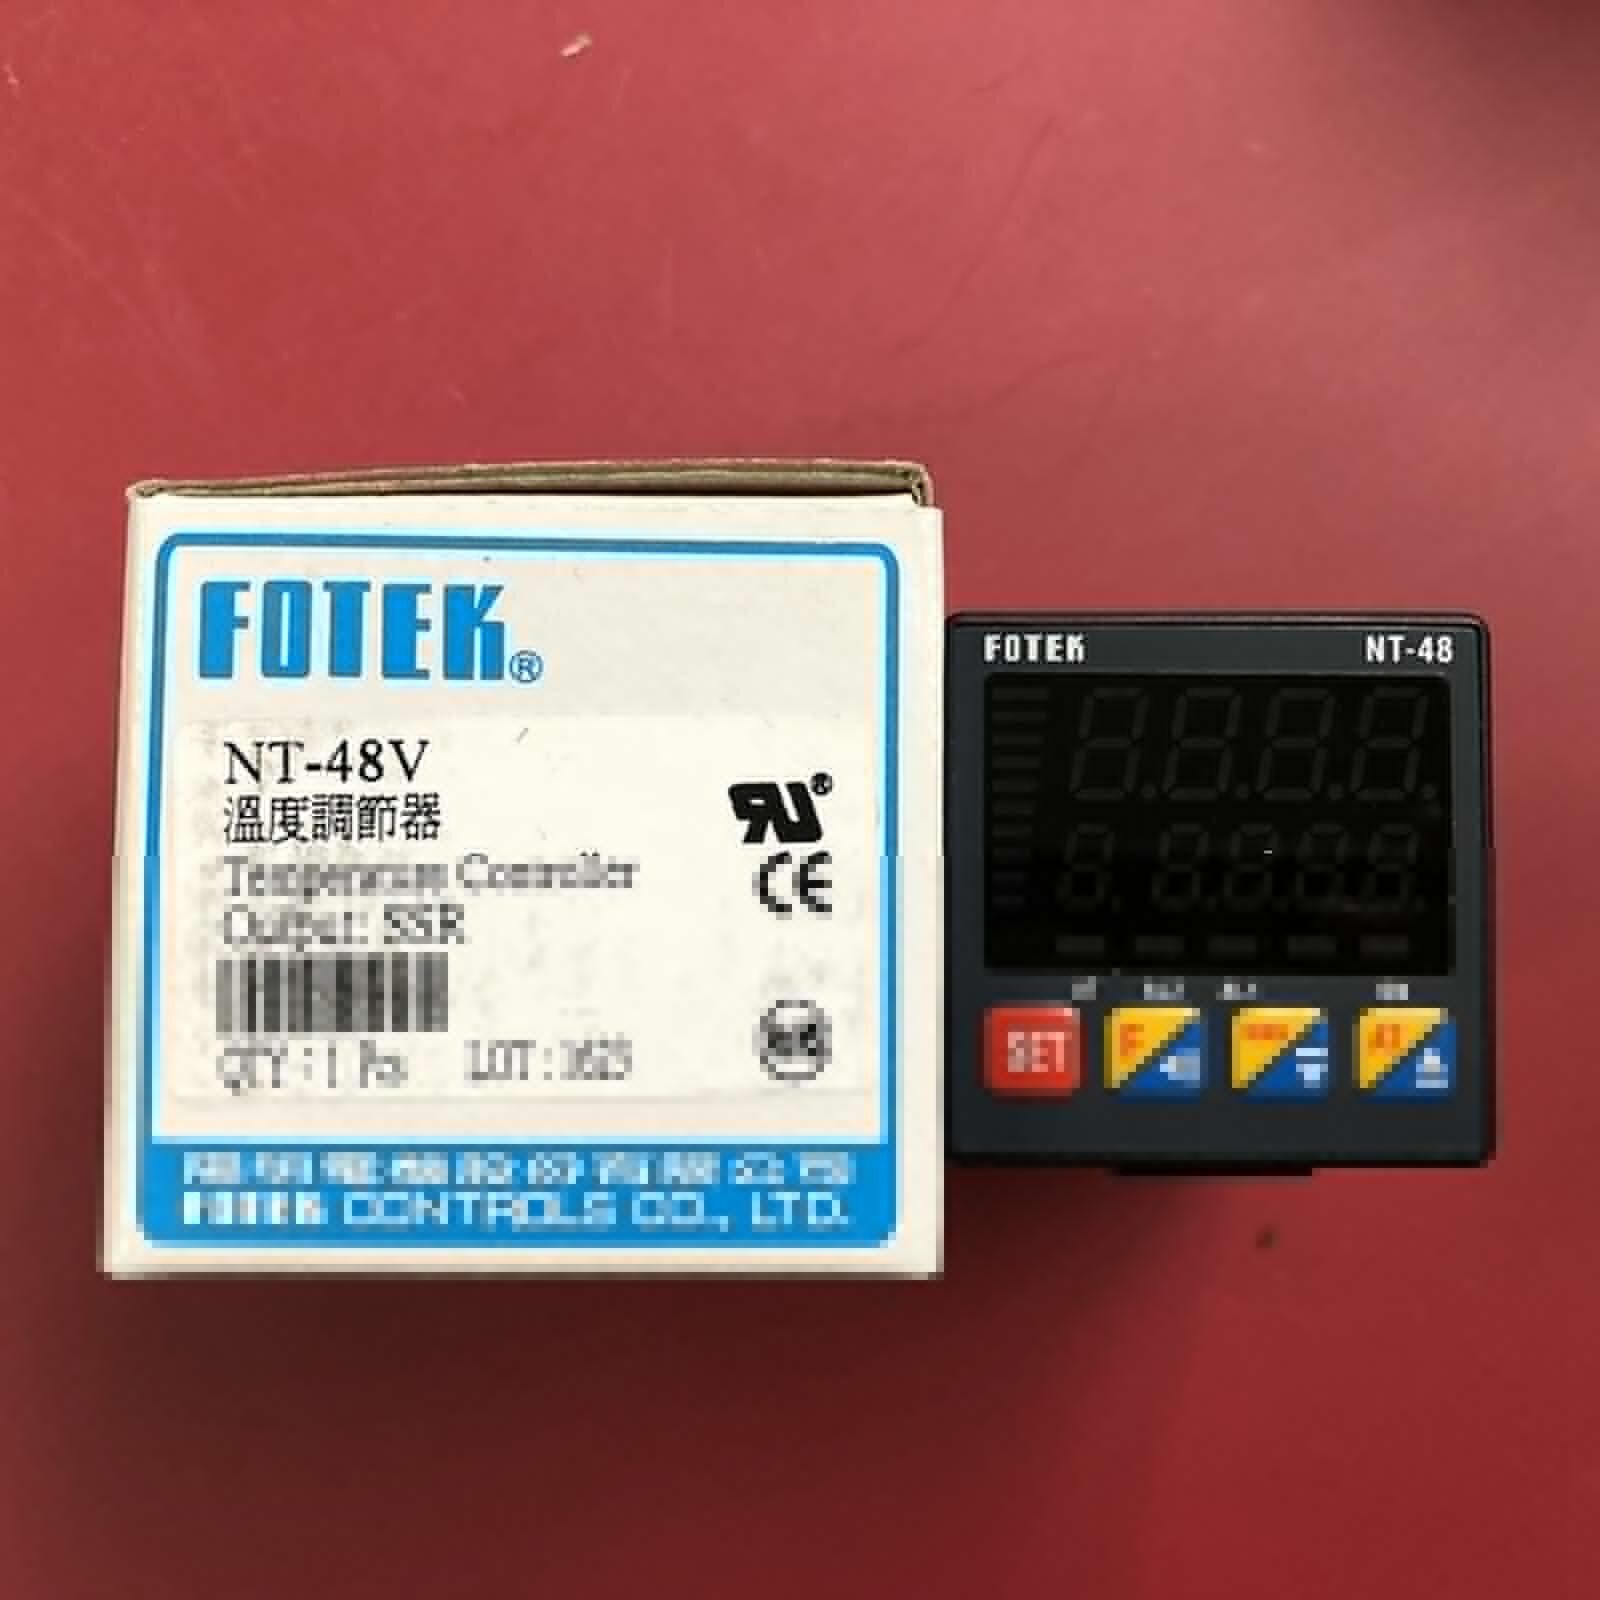 FOTEK NT-48-V Temperature Controller